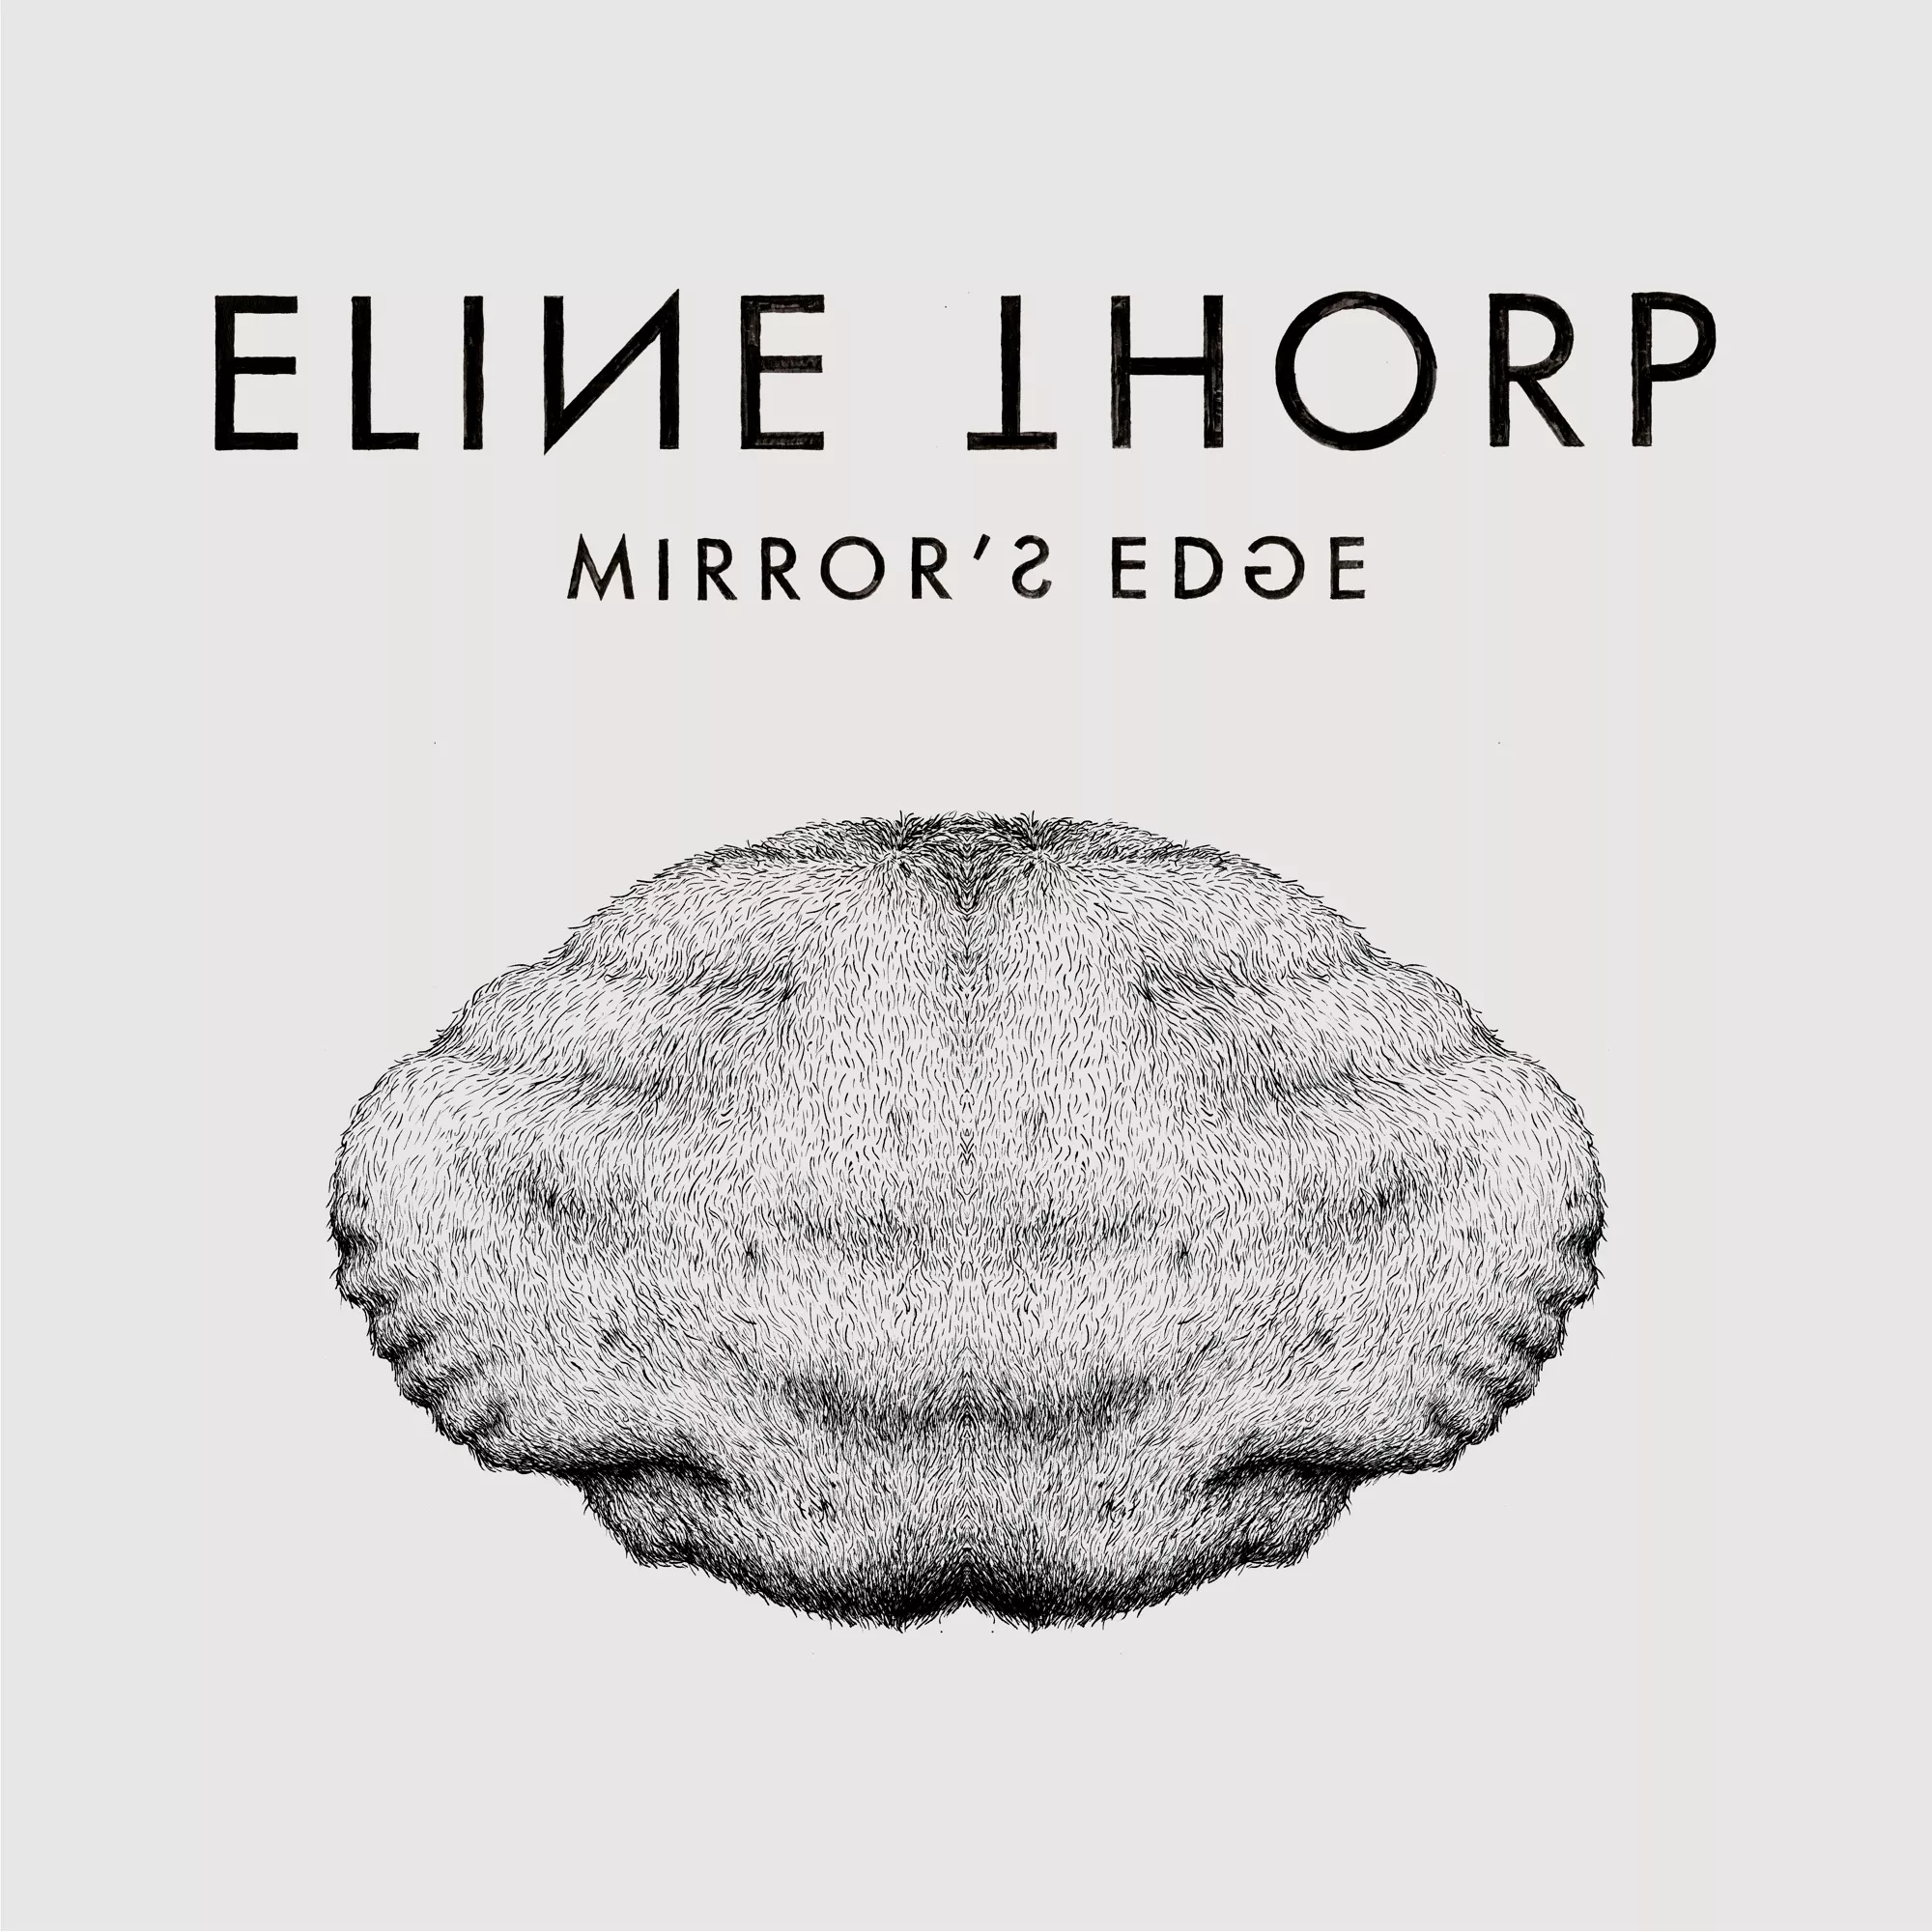 Mirror's Edge - Eline Thorp